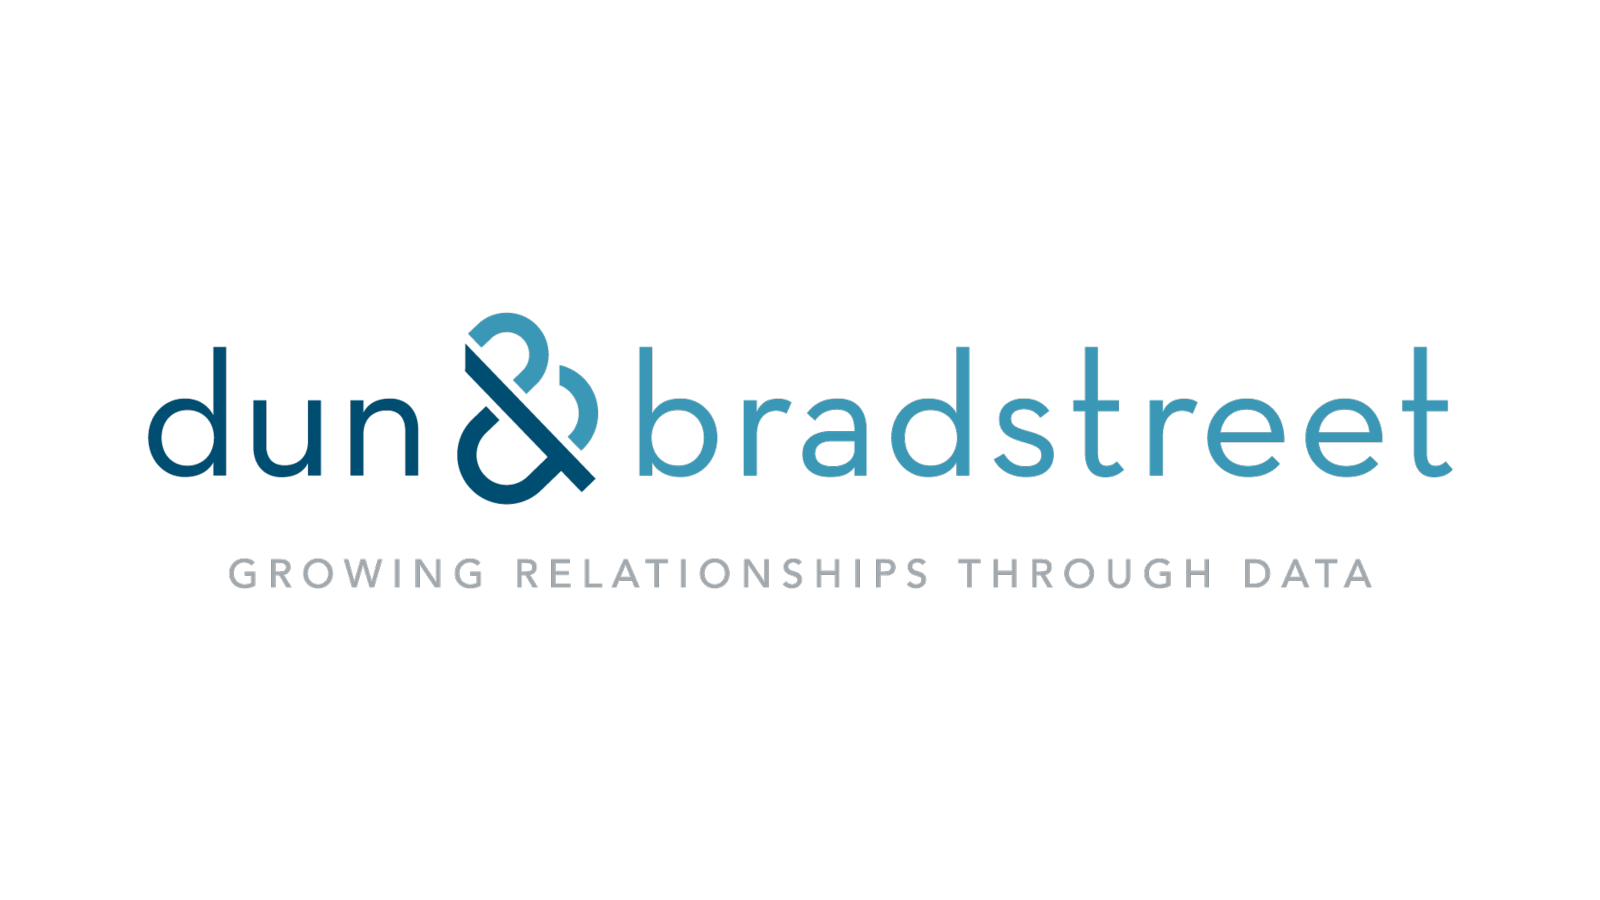 Dun & Bradstreet logo